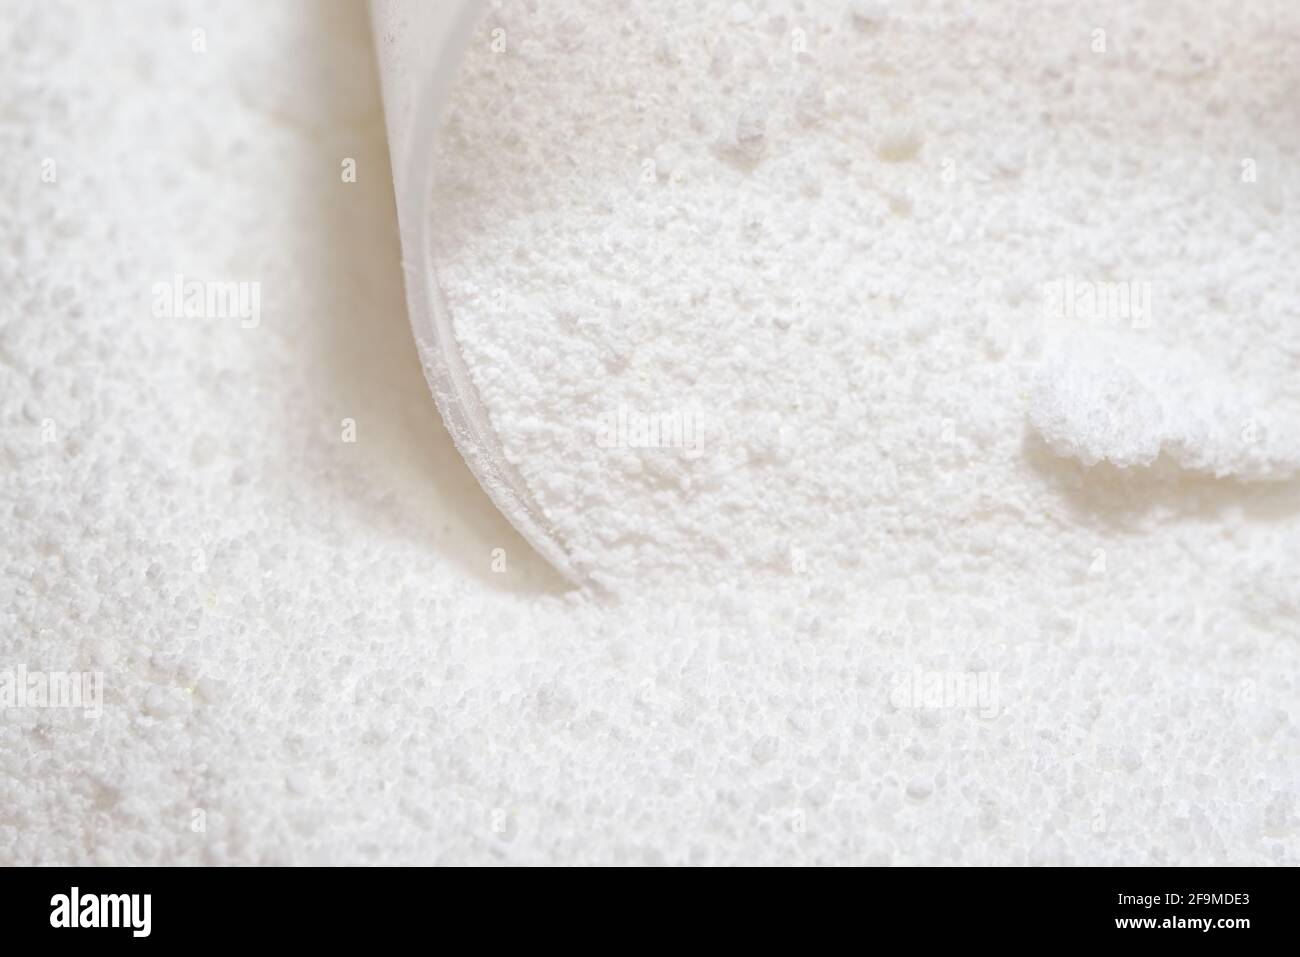 Polvere detergente bianca pura per bucato, aggrappata e raccolta da un misurino in plastica trasparente. Immagine luminosa e super macro prospettiva Foto Stock